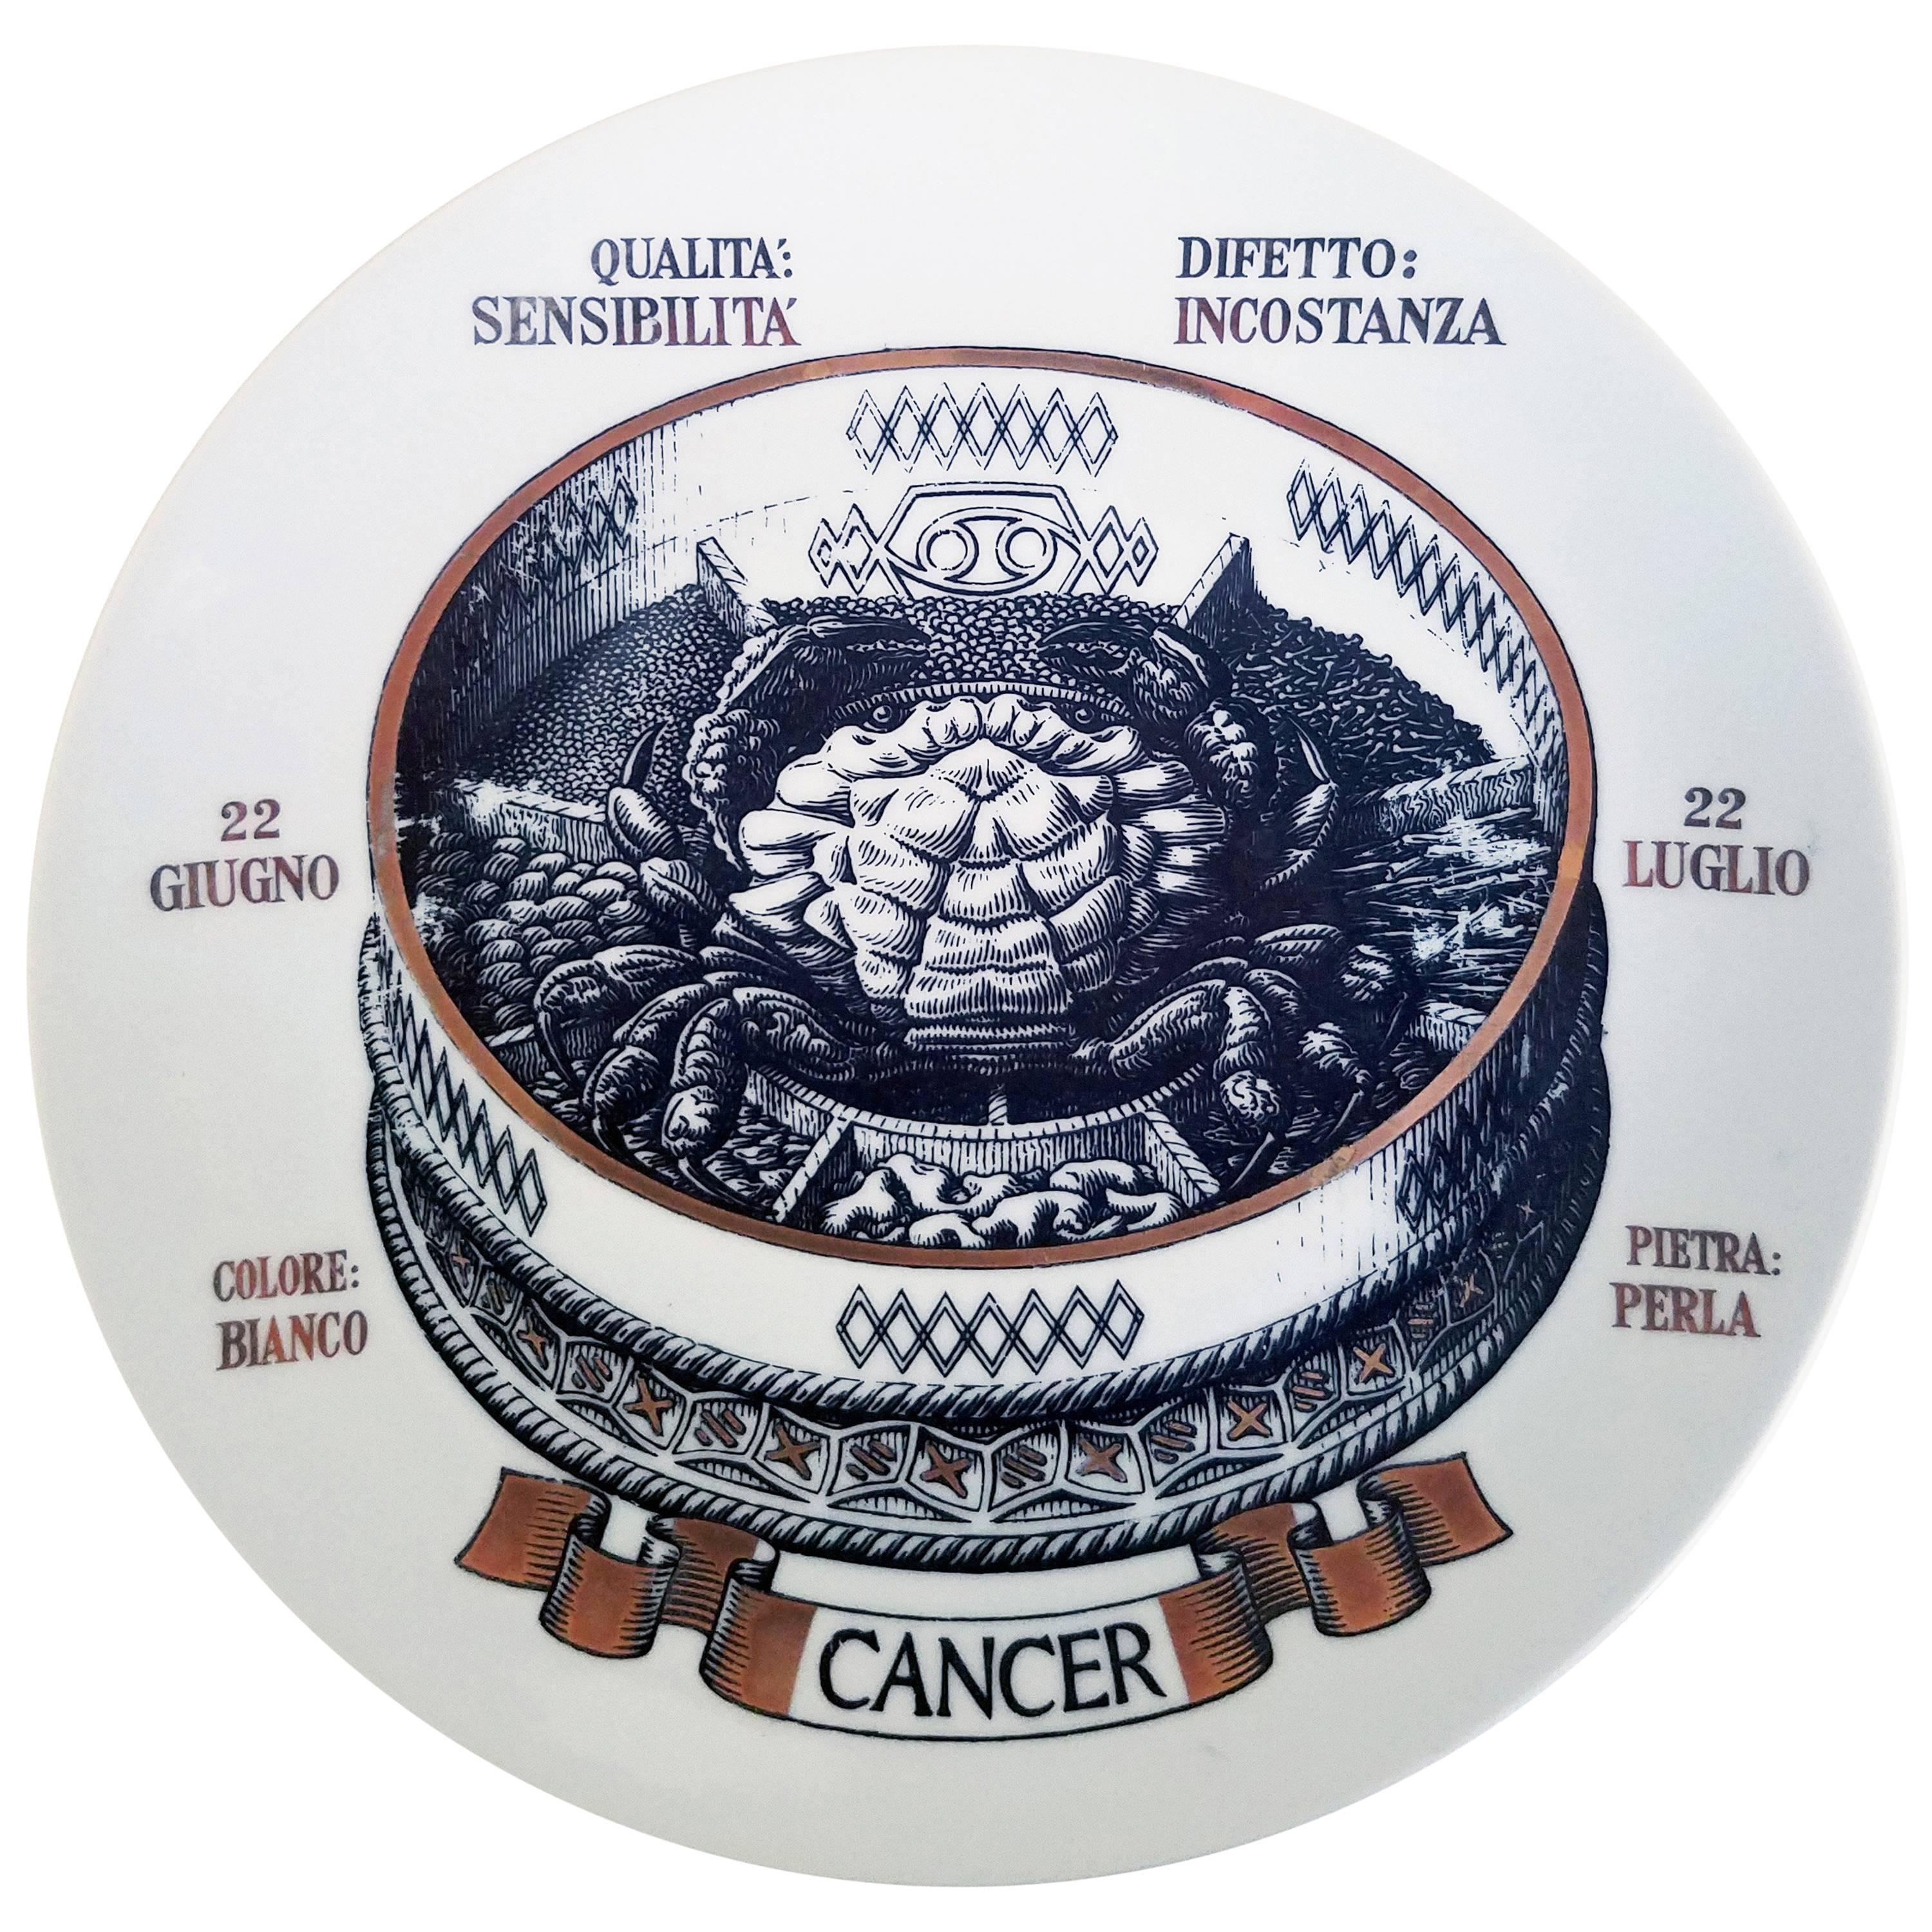 Piero Fornasetti Astrological Zodiac Plate, Cancer, Gli Zodiaci Farmacope For Sale